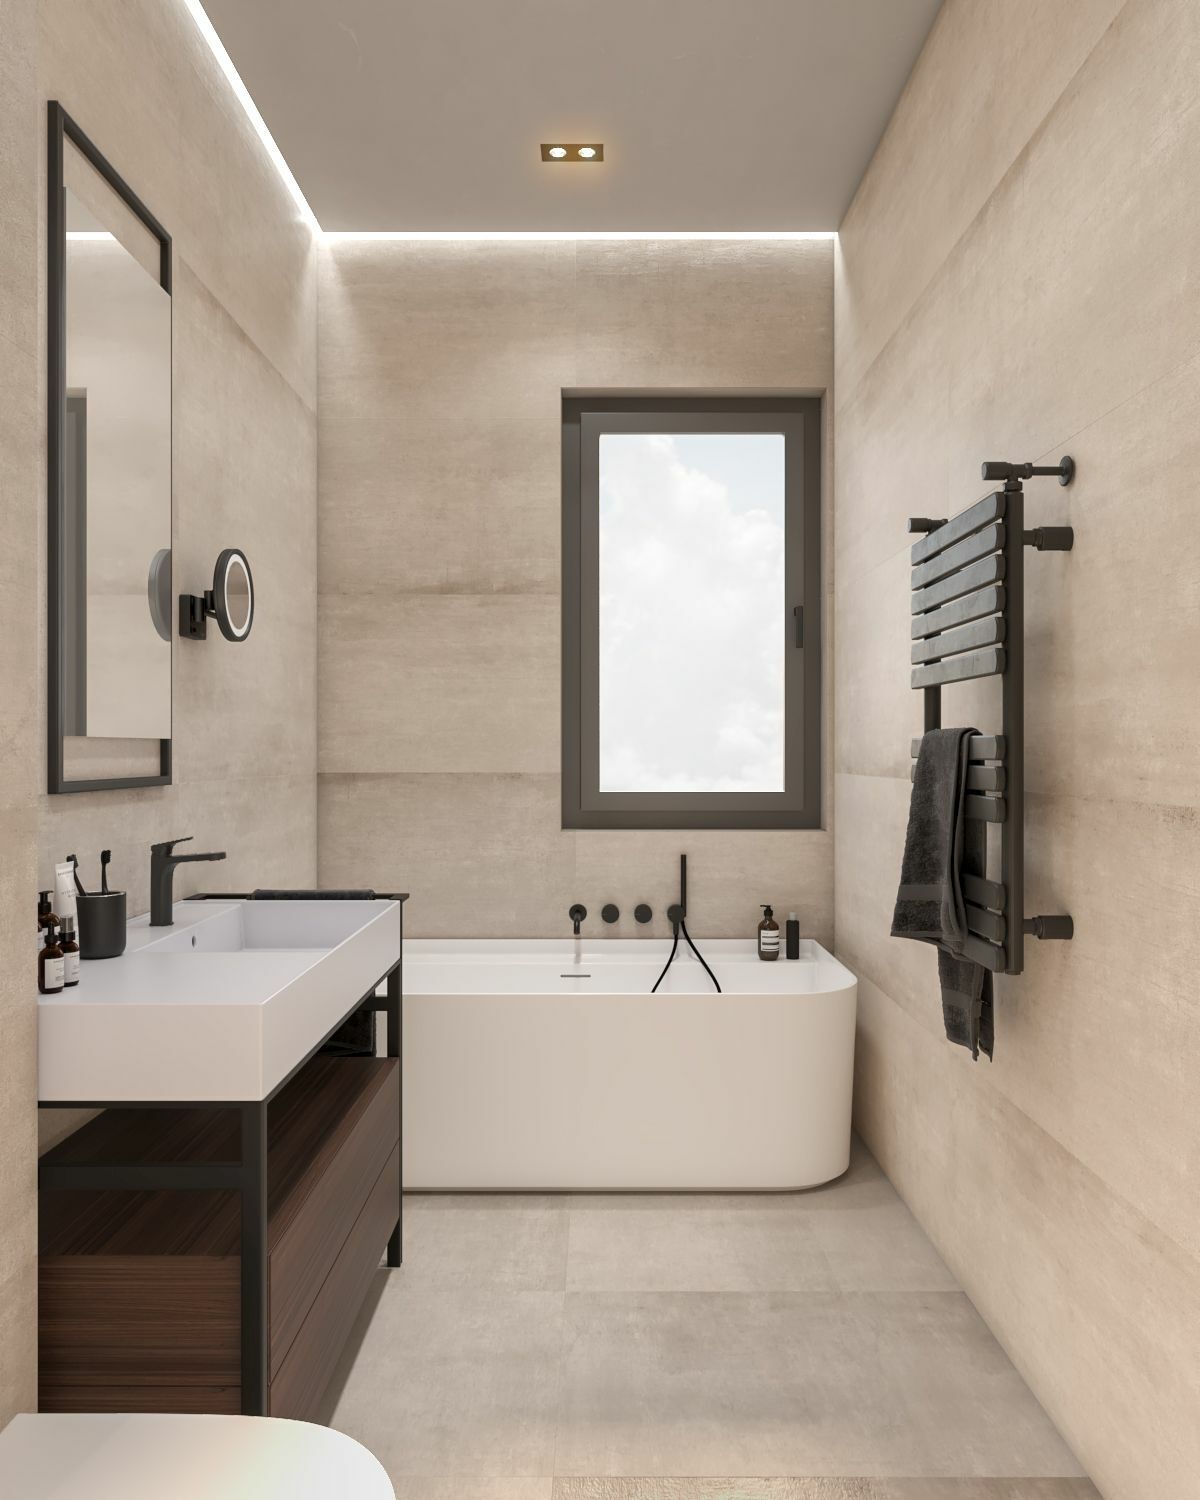 Rejtett fények dobják fel a modern fürdőszobai hangulatot